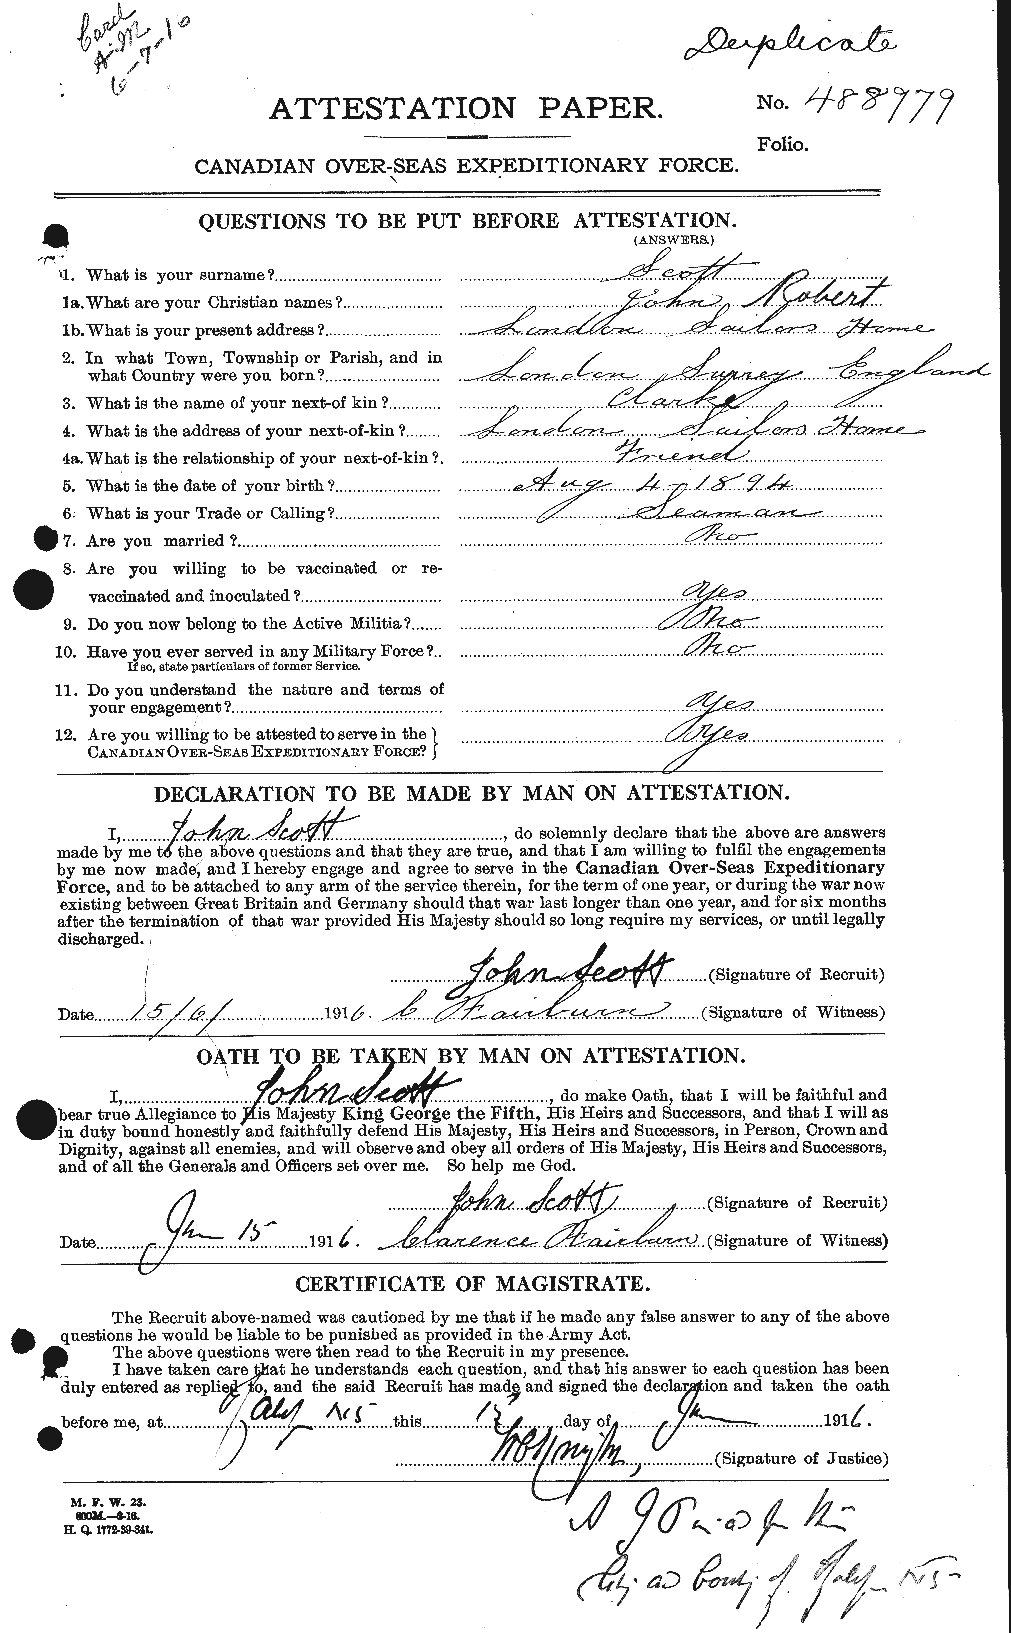 Dossiers du Personnel de la Première Guerre mondiale - CEC 084434a